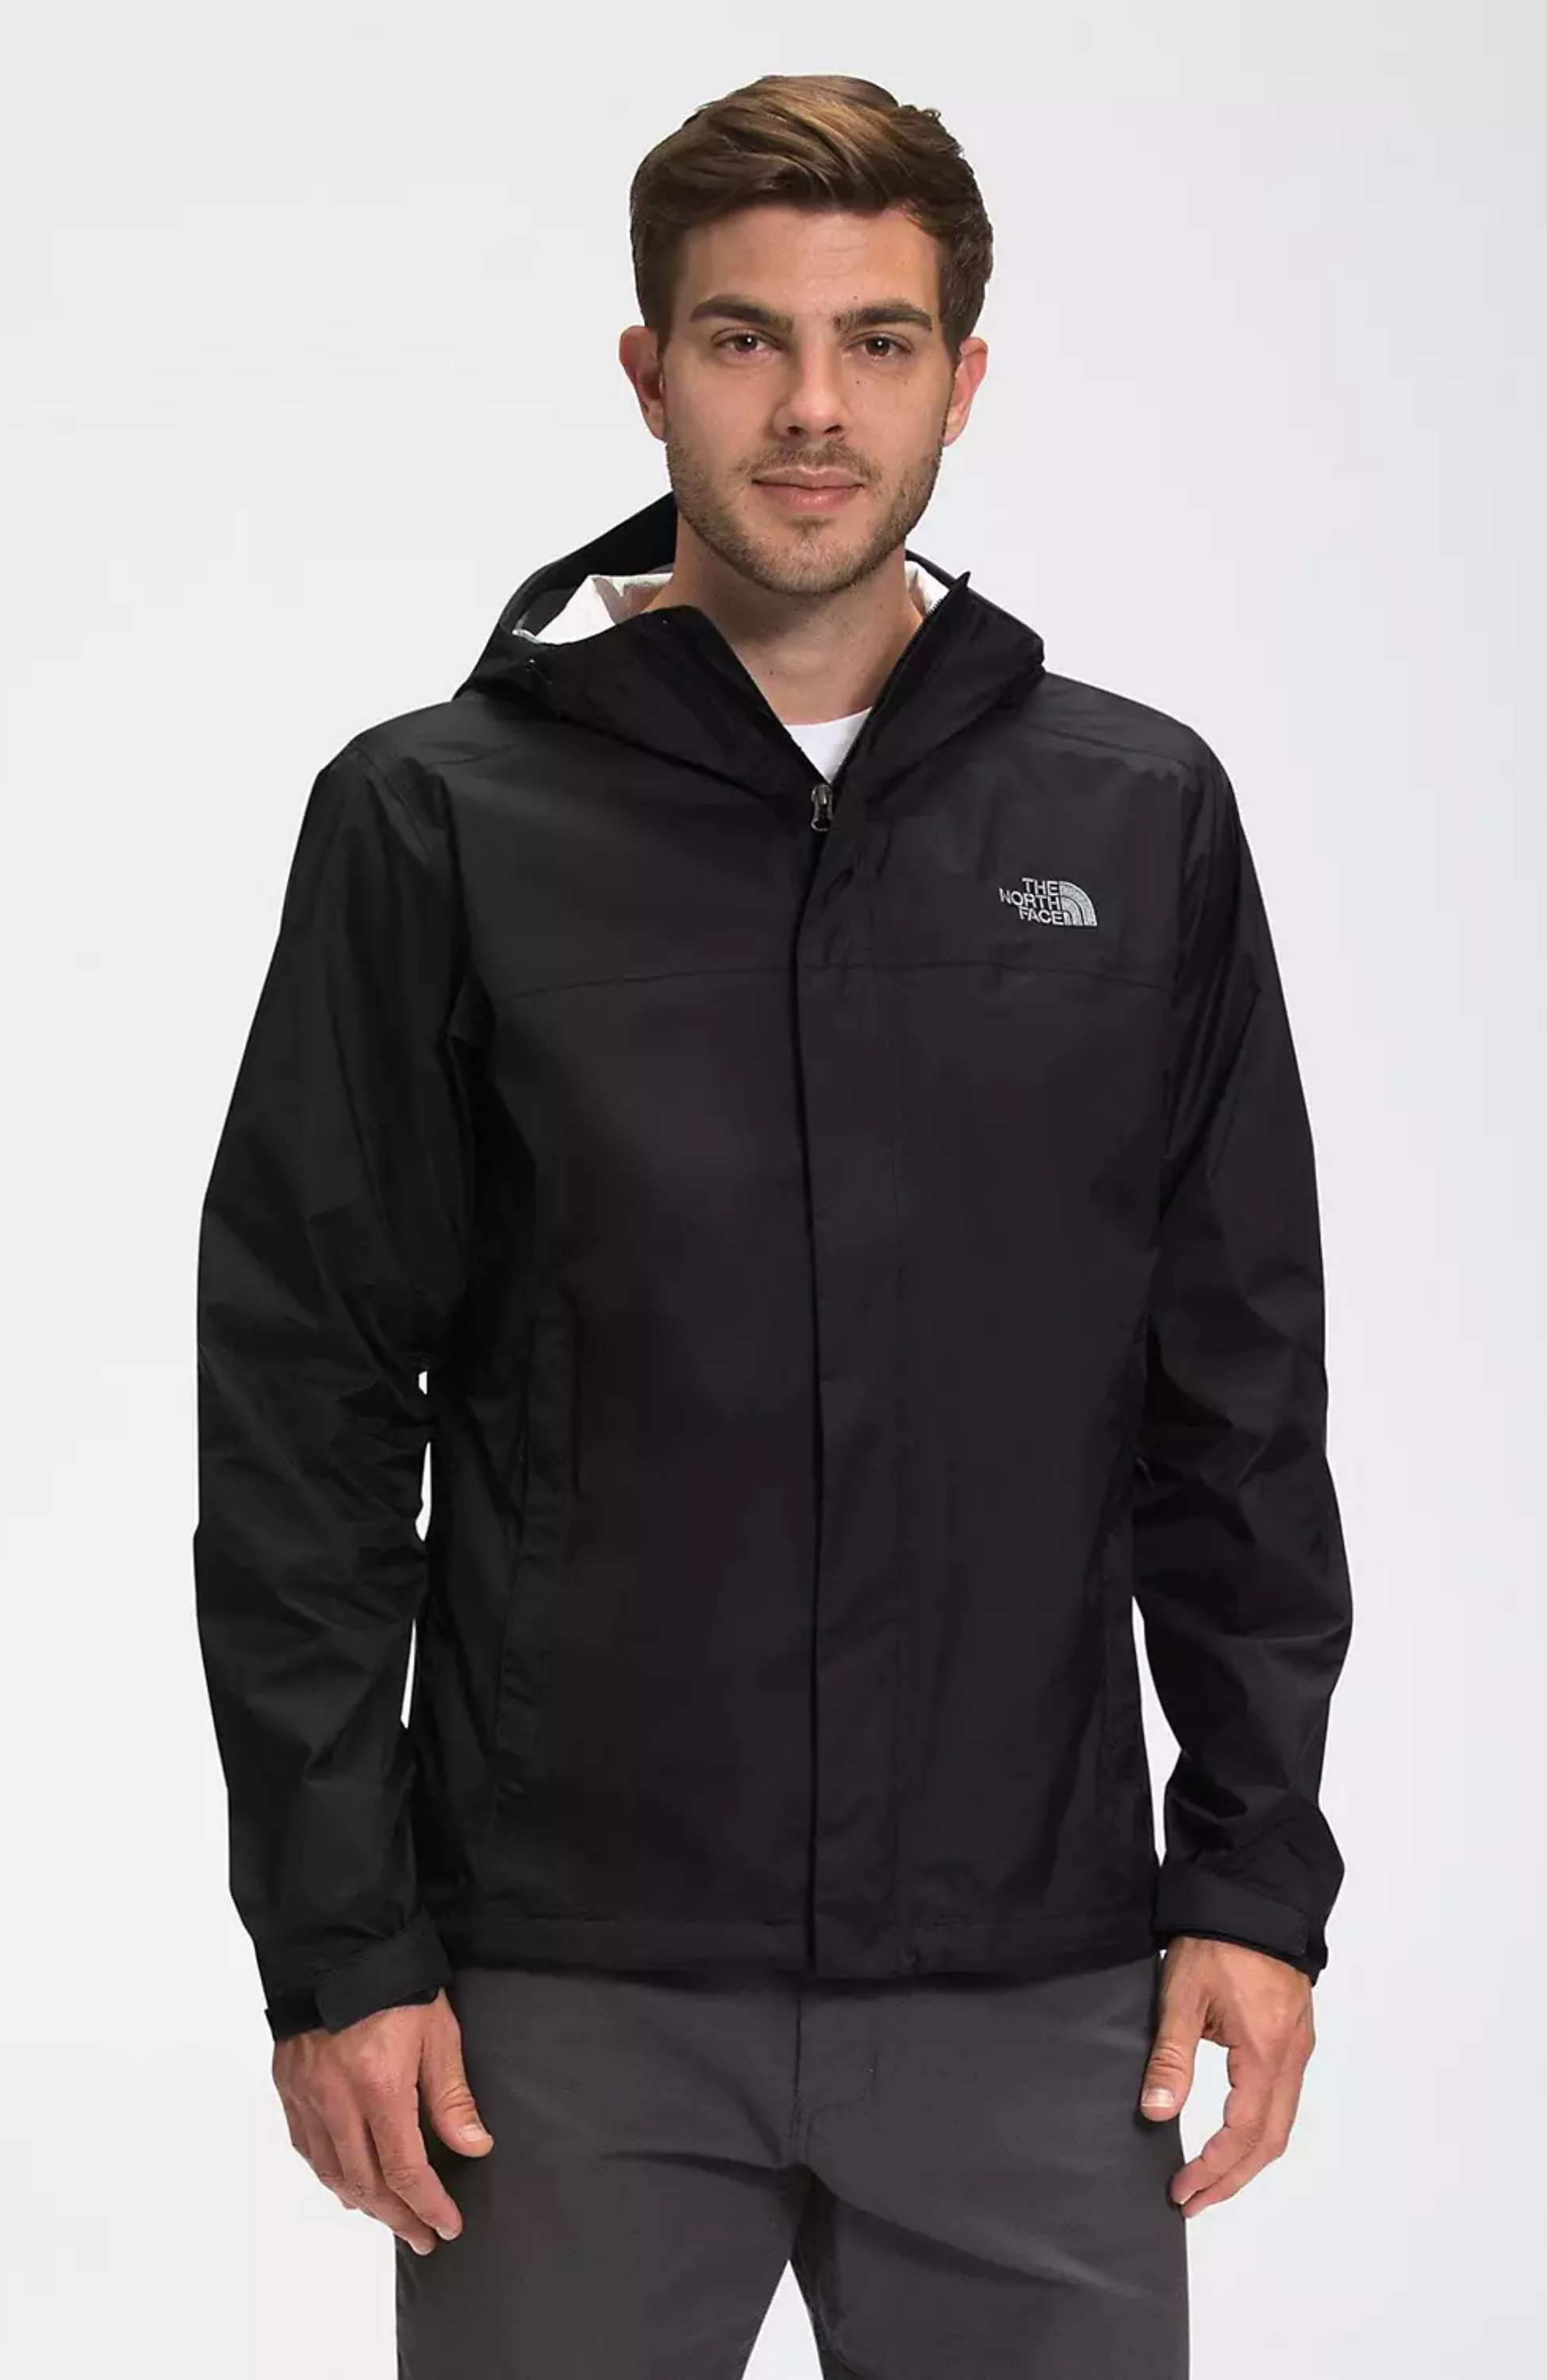 Men's The North Face Venture 2 Waterproof Hooded Jacket Medium